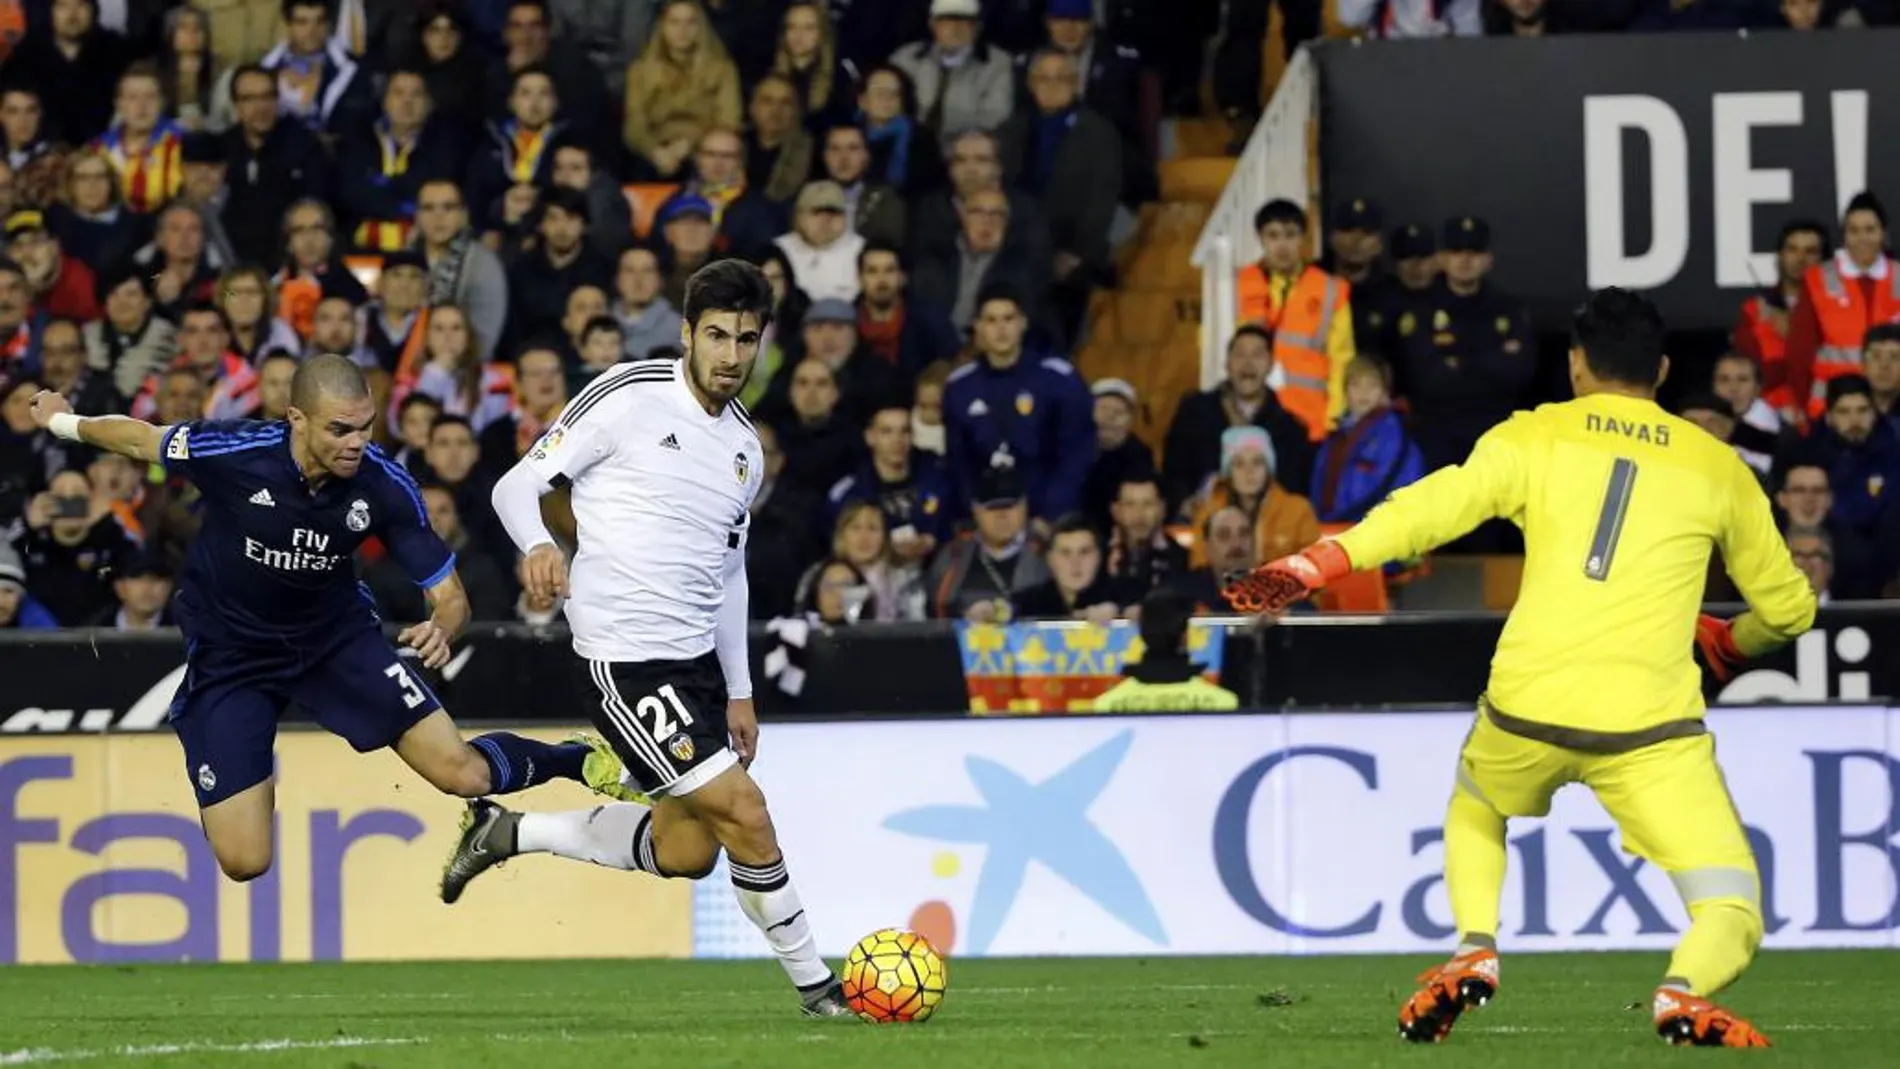 El defensa portugués del Real Madrid Pepe (i) comete penalti sobre André Gomes (c), centrocampista portugués del Valencia CF